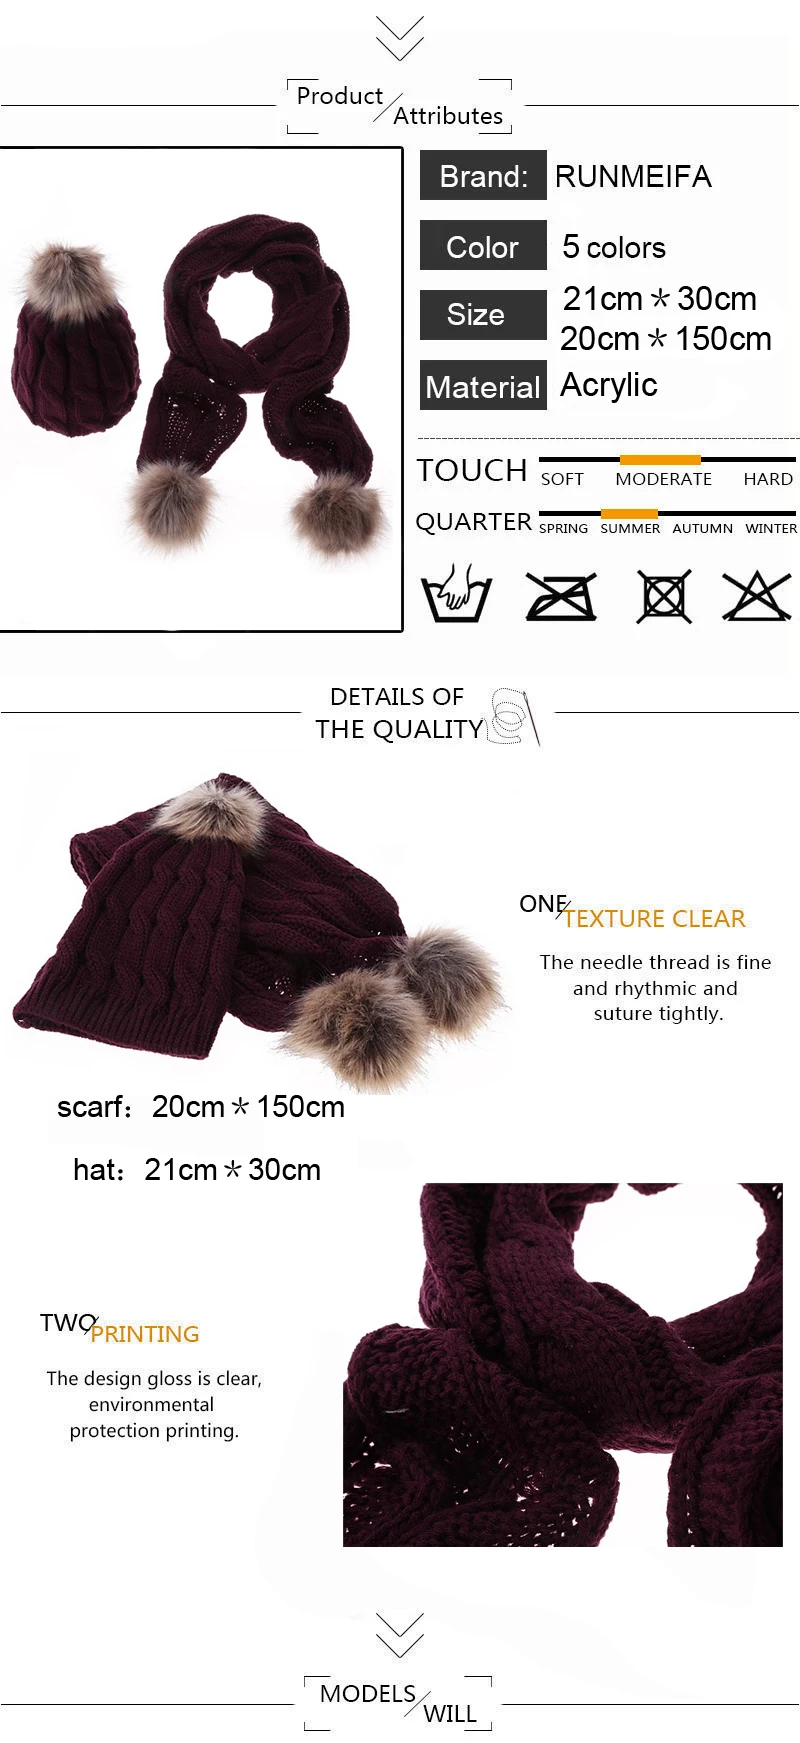 2108 классический модный акриловый Теплый шарф и шапка набор для женщин осень и зима твердый шарф шляпа подарок